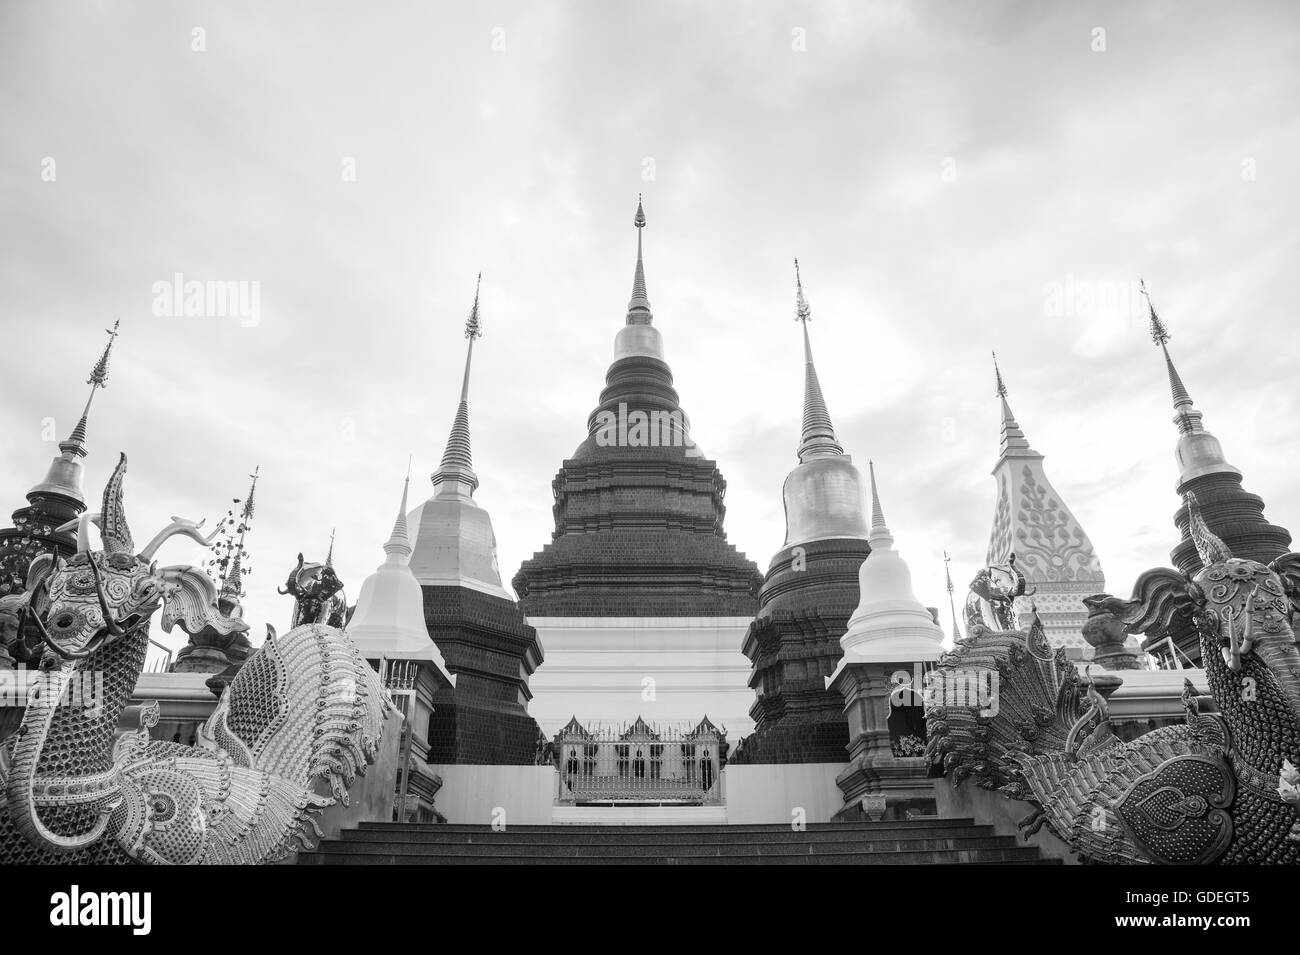 Ou temple Wat banden photo en noir et blanc,chiangmai ,Thaïlande. Banque D'Images